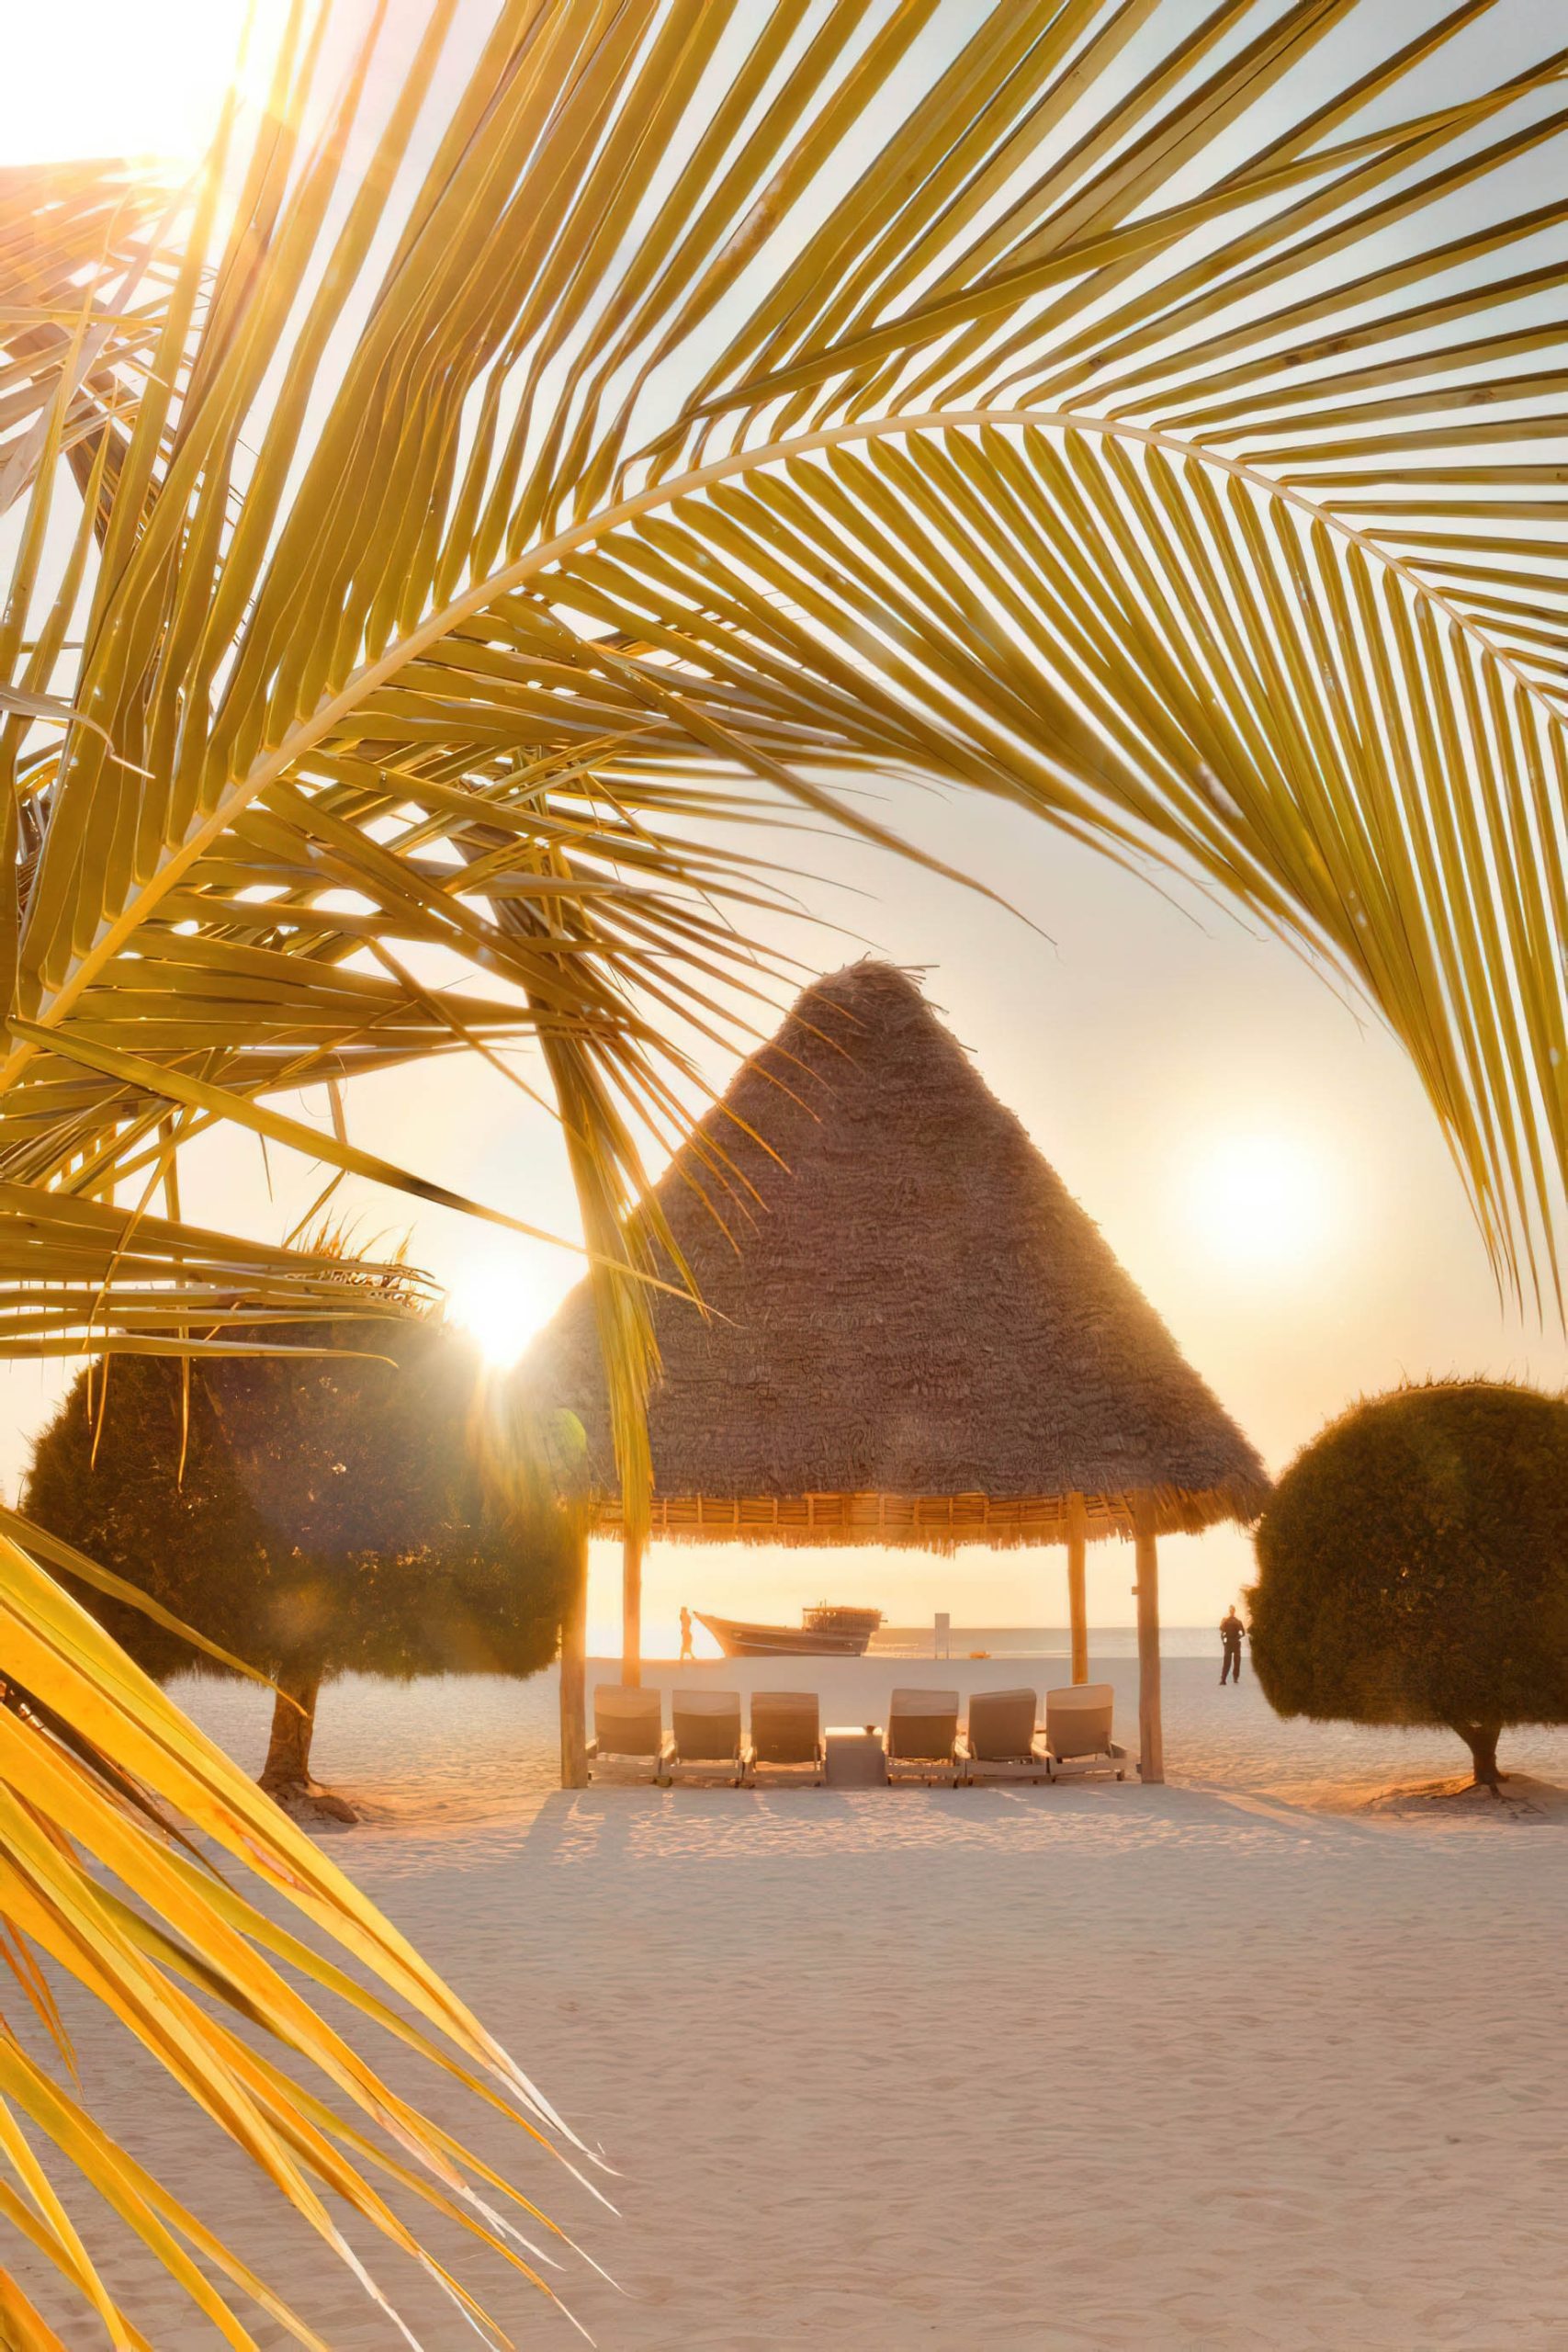 Gold Zanzibar Beach House & Spa Resort – Nungwi, Zanzibar, Tanzania – Beach Cabana Sunset